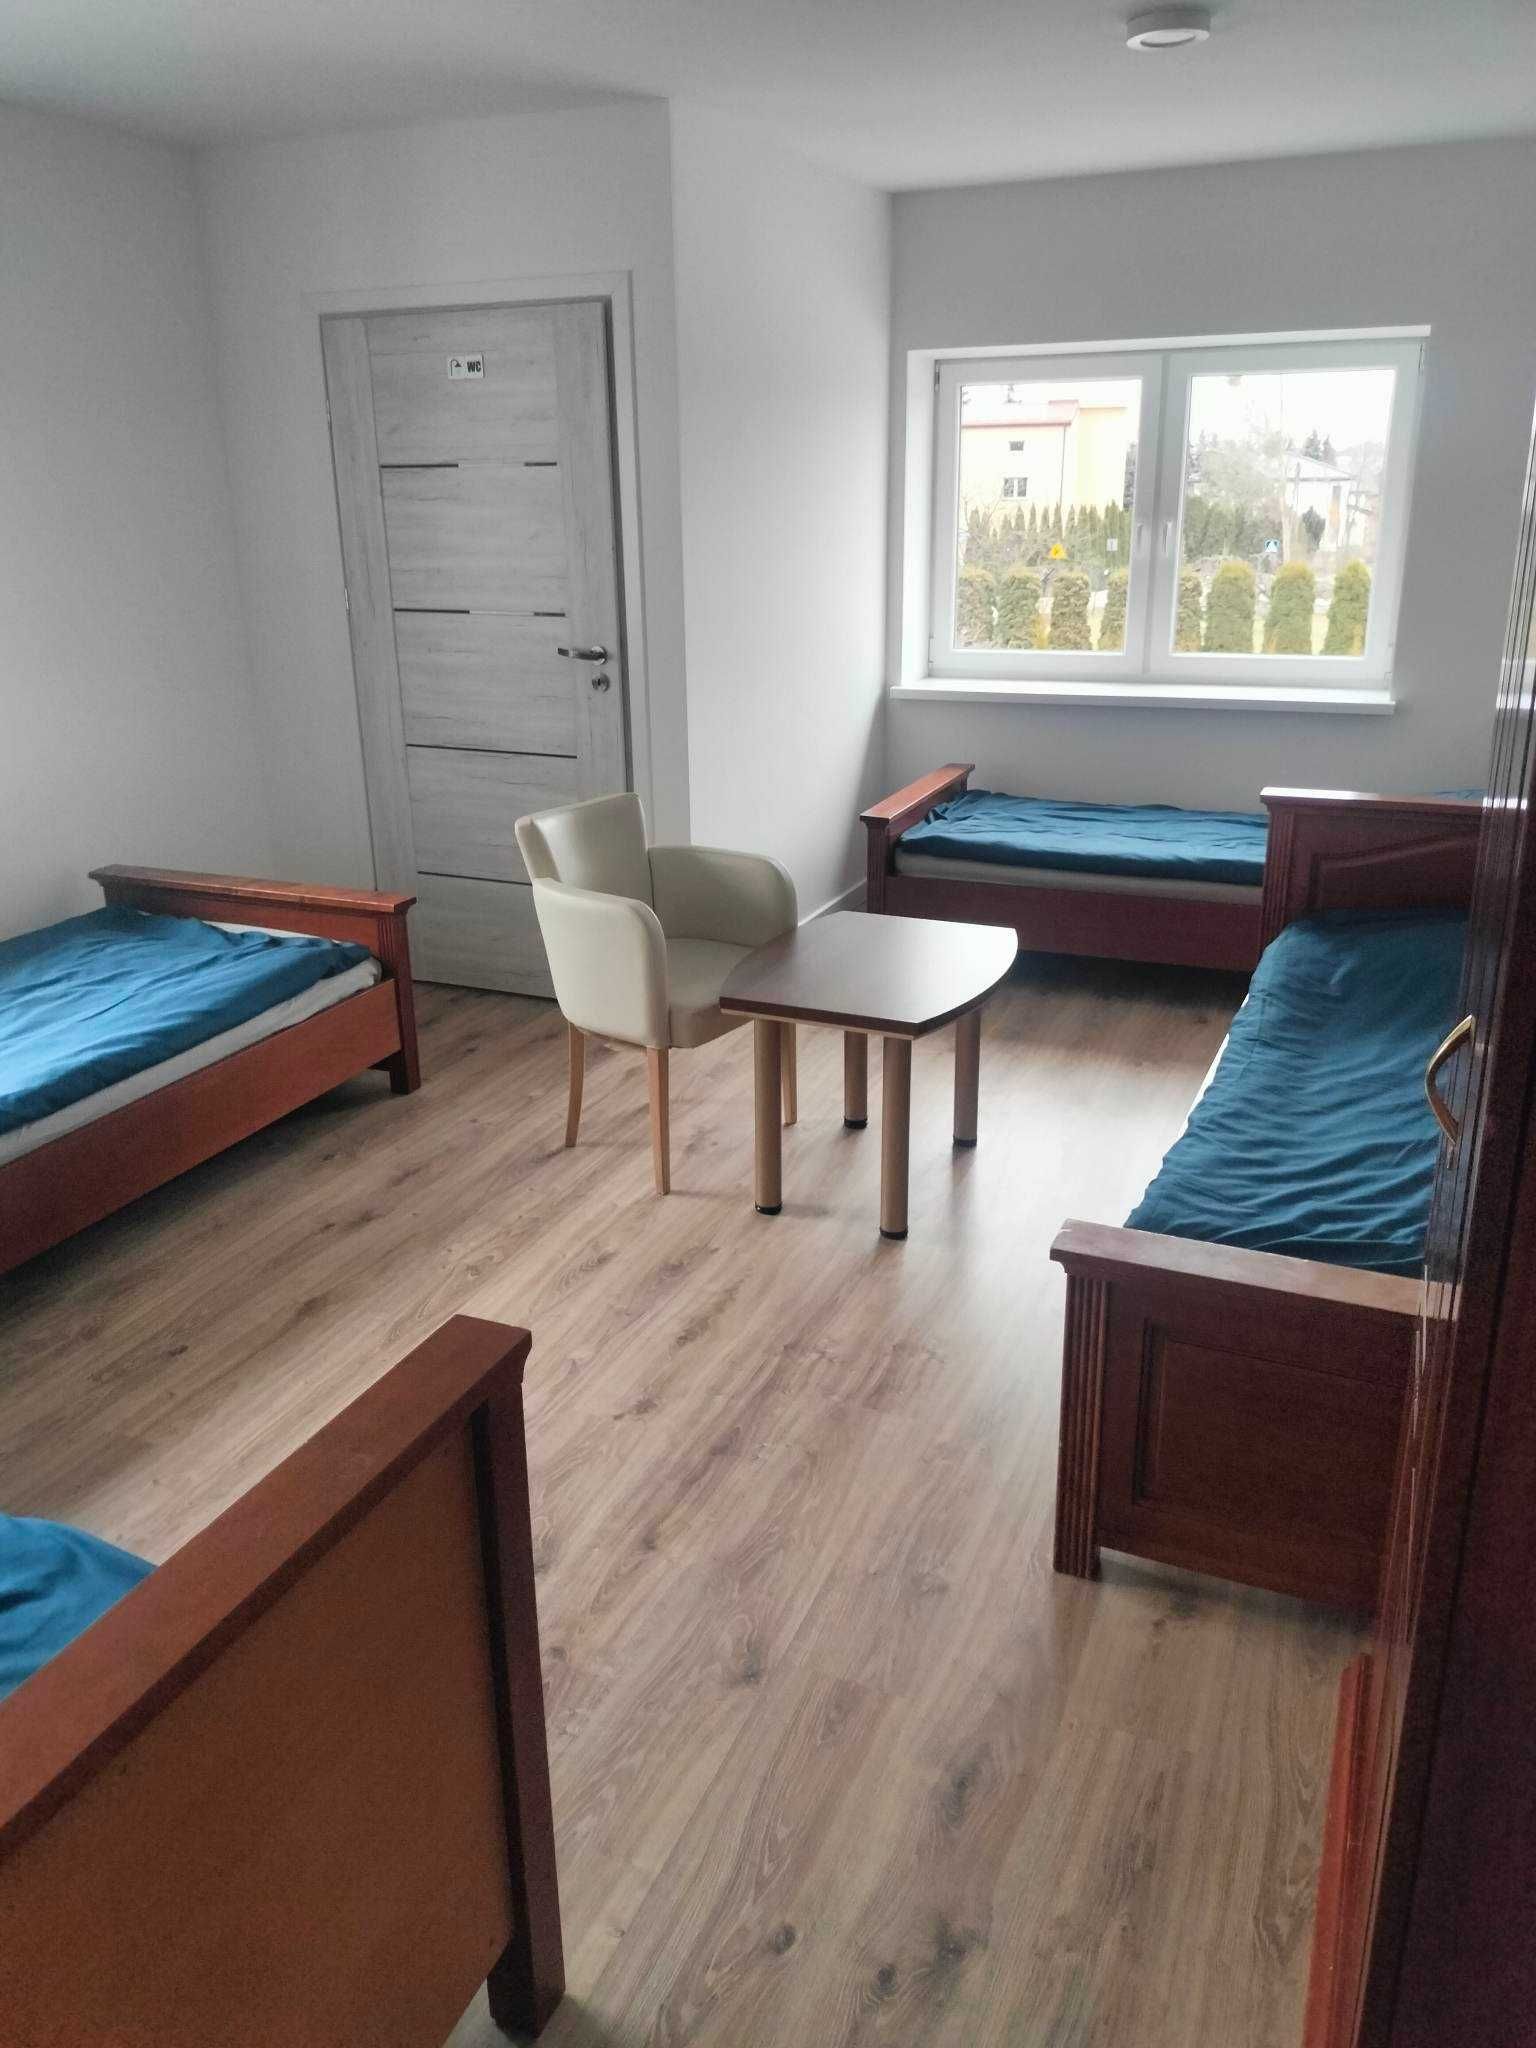 Tanie noclegi Łódź, pokoje na doby hostel łódź wysoki standard kwatery